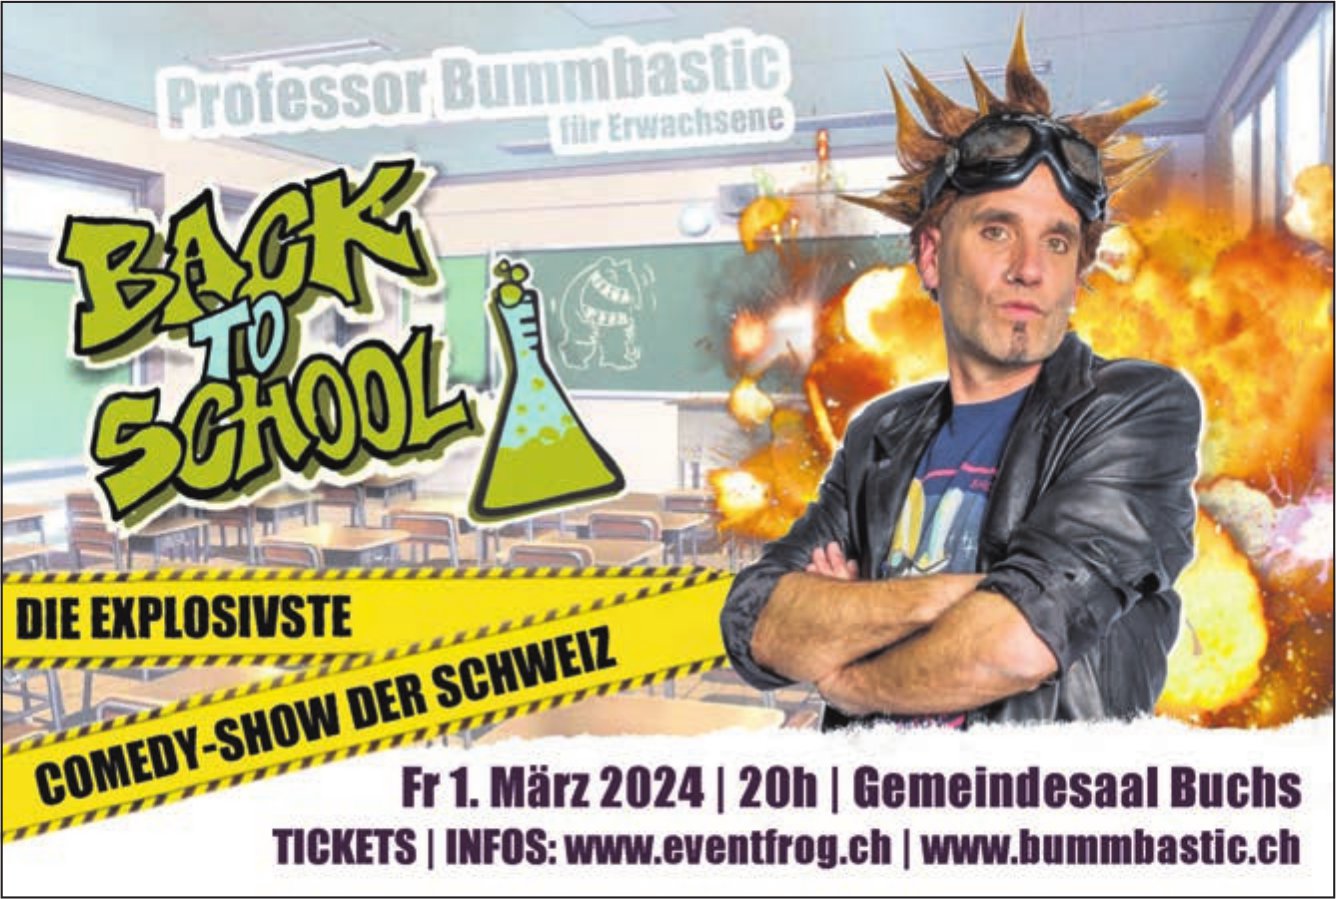 Back to School, 1. März, Gemeindesaal, Buchs